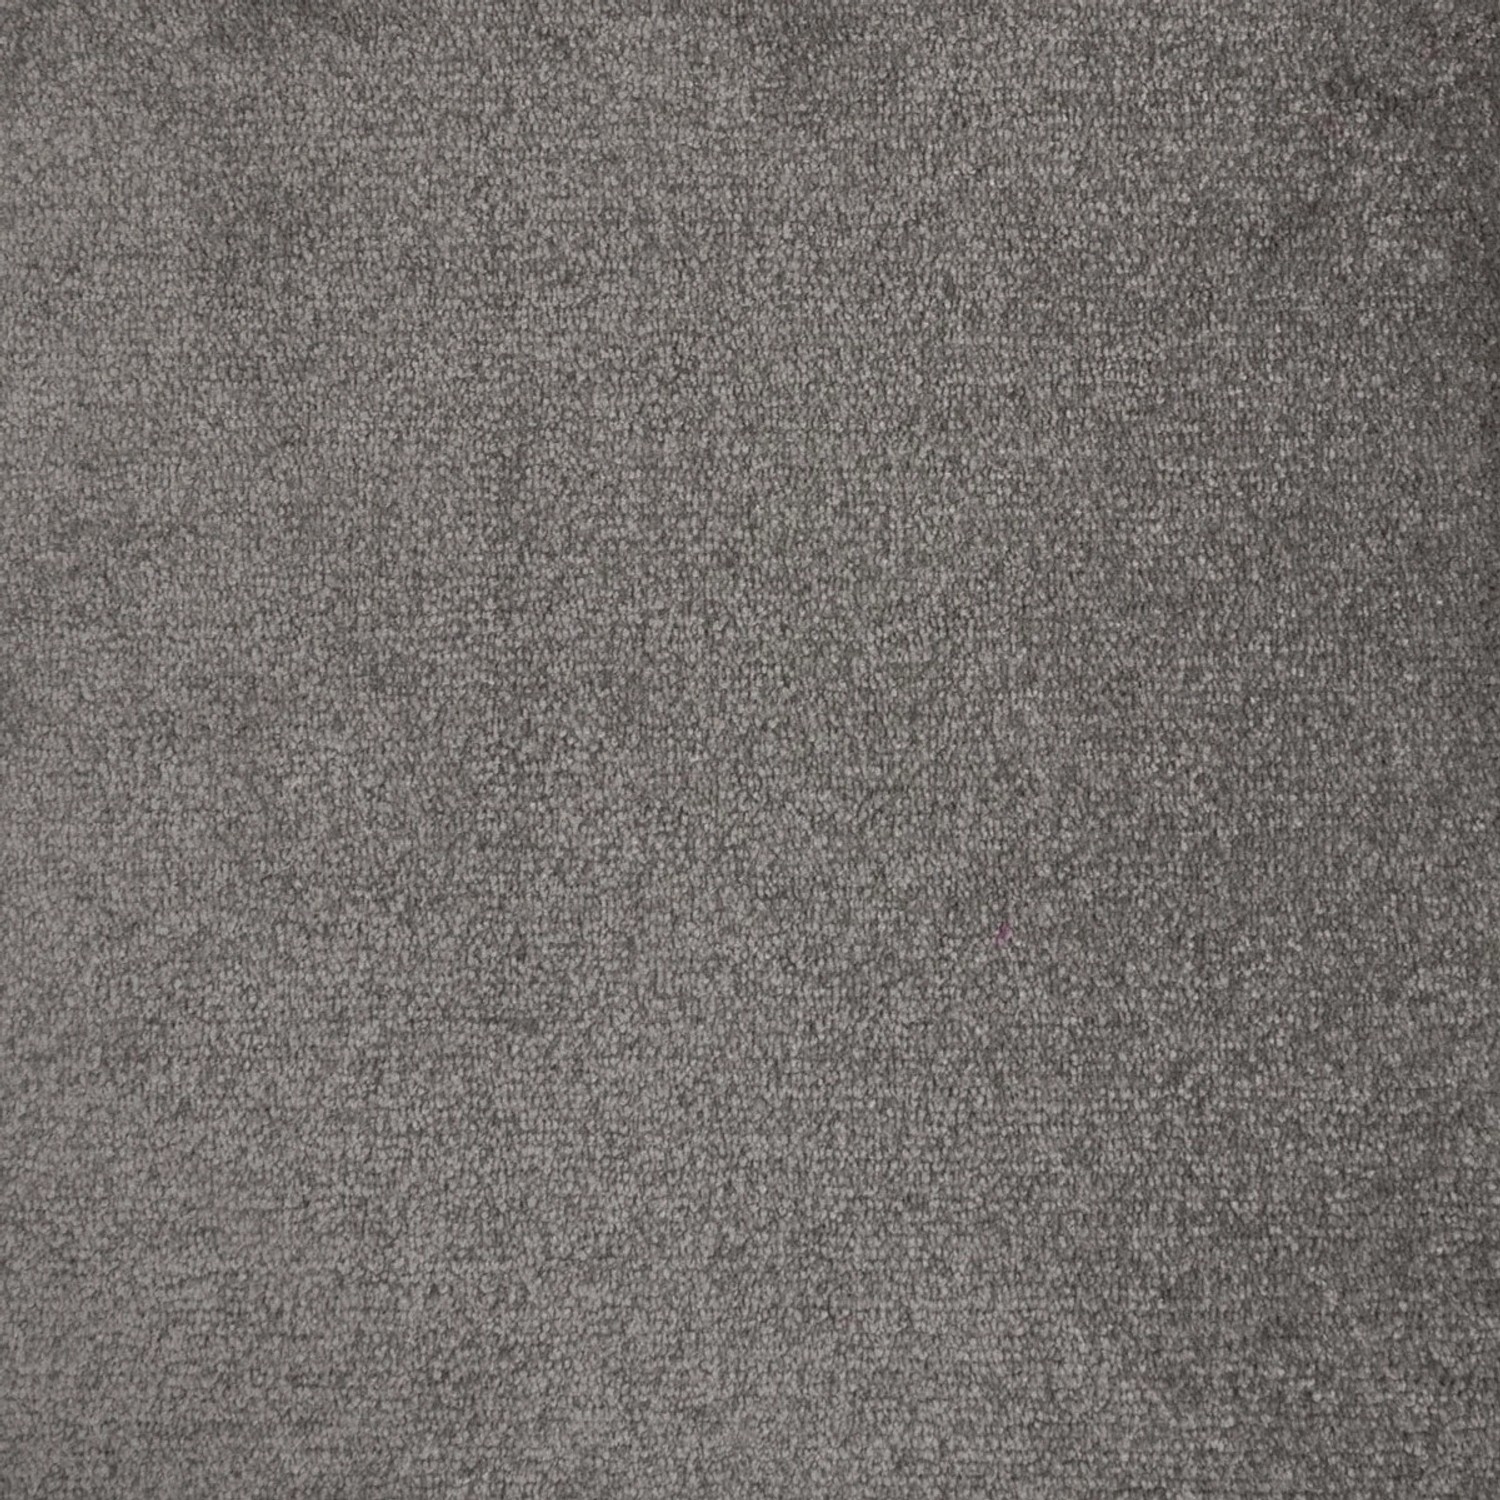 Schatex Teppichboden Fliesen Grau Velours Teppichfliesen Selbstliegend In Dunkelgrau Veloursteppich Fliesen Weich Ideal Für Wohn Und Schlafzimmer von Schatex